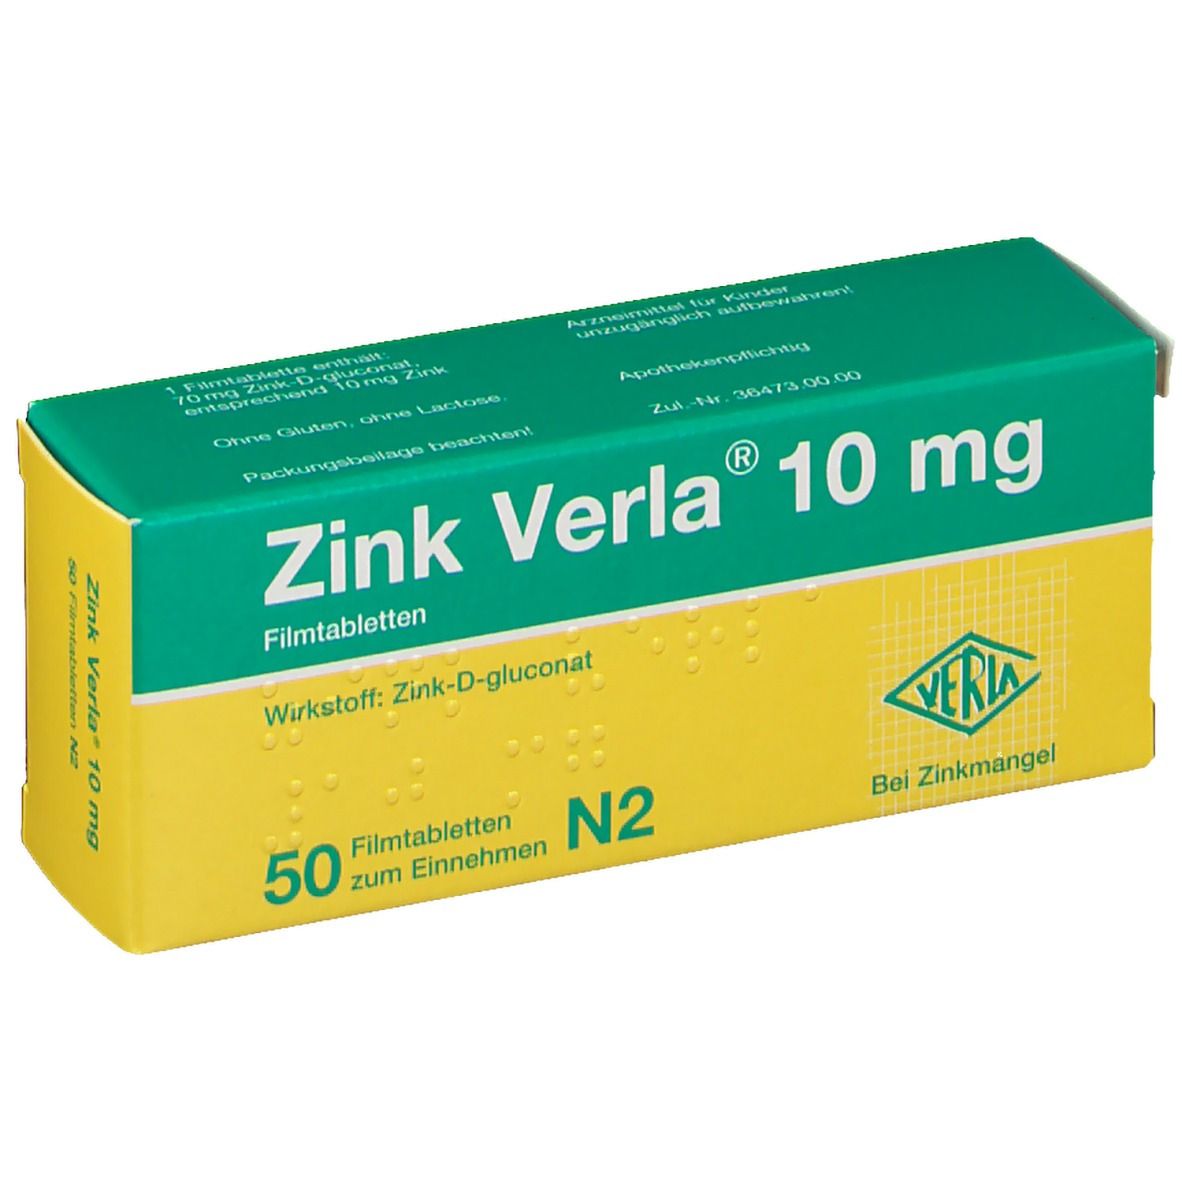 Zink Verla® 10 mg Filmtabletten